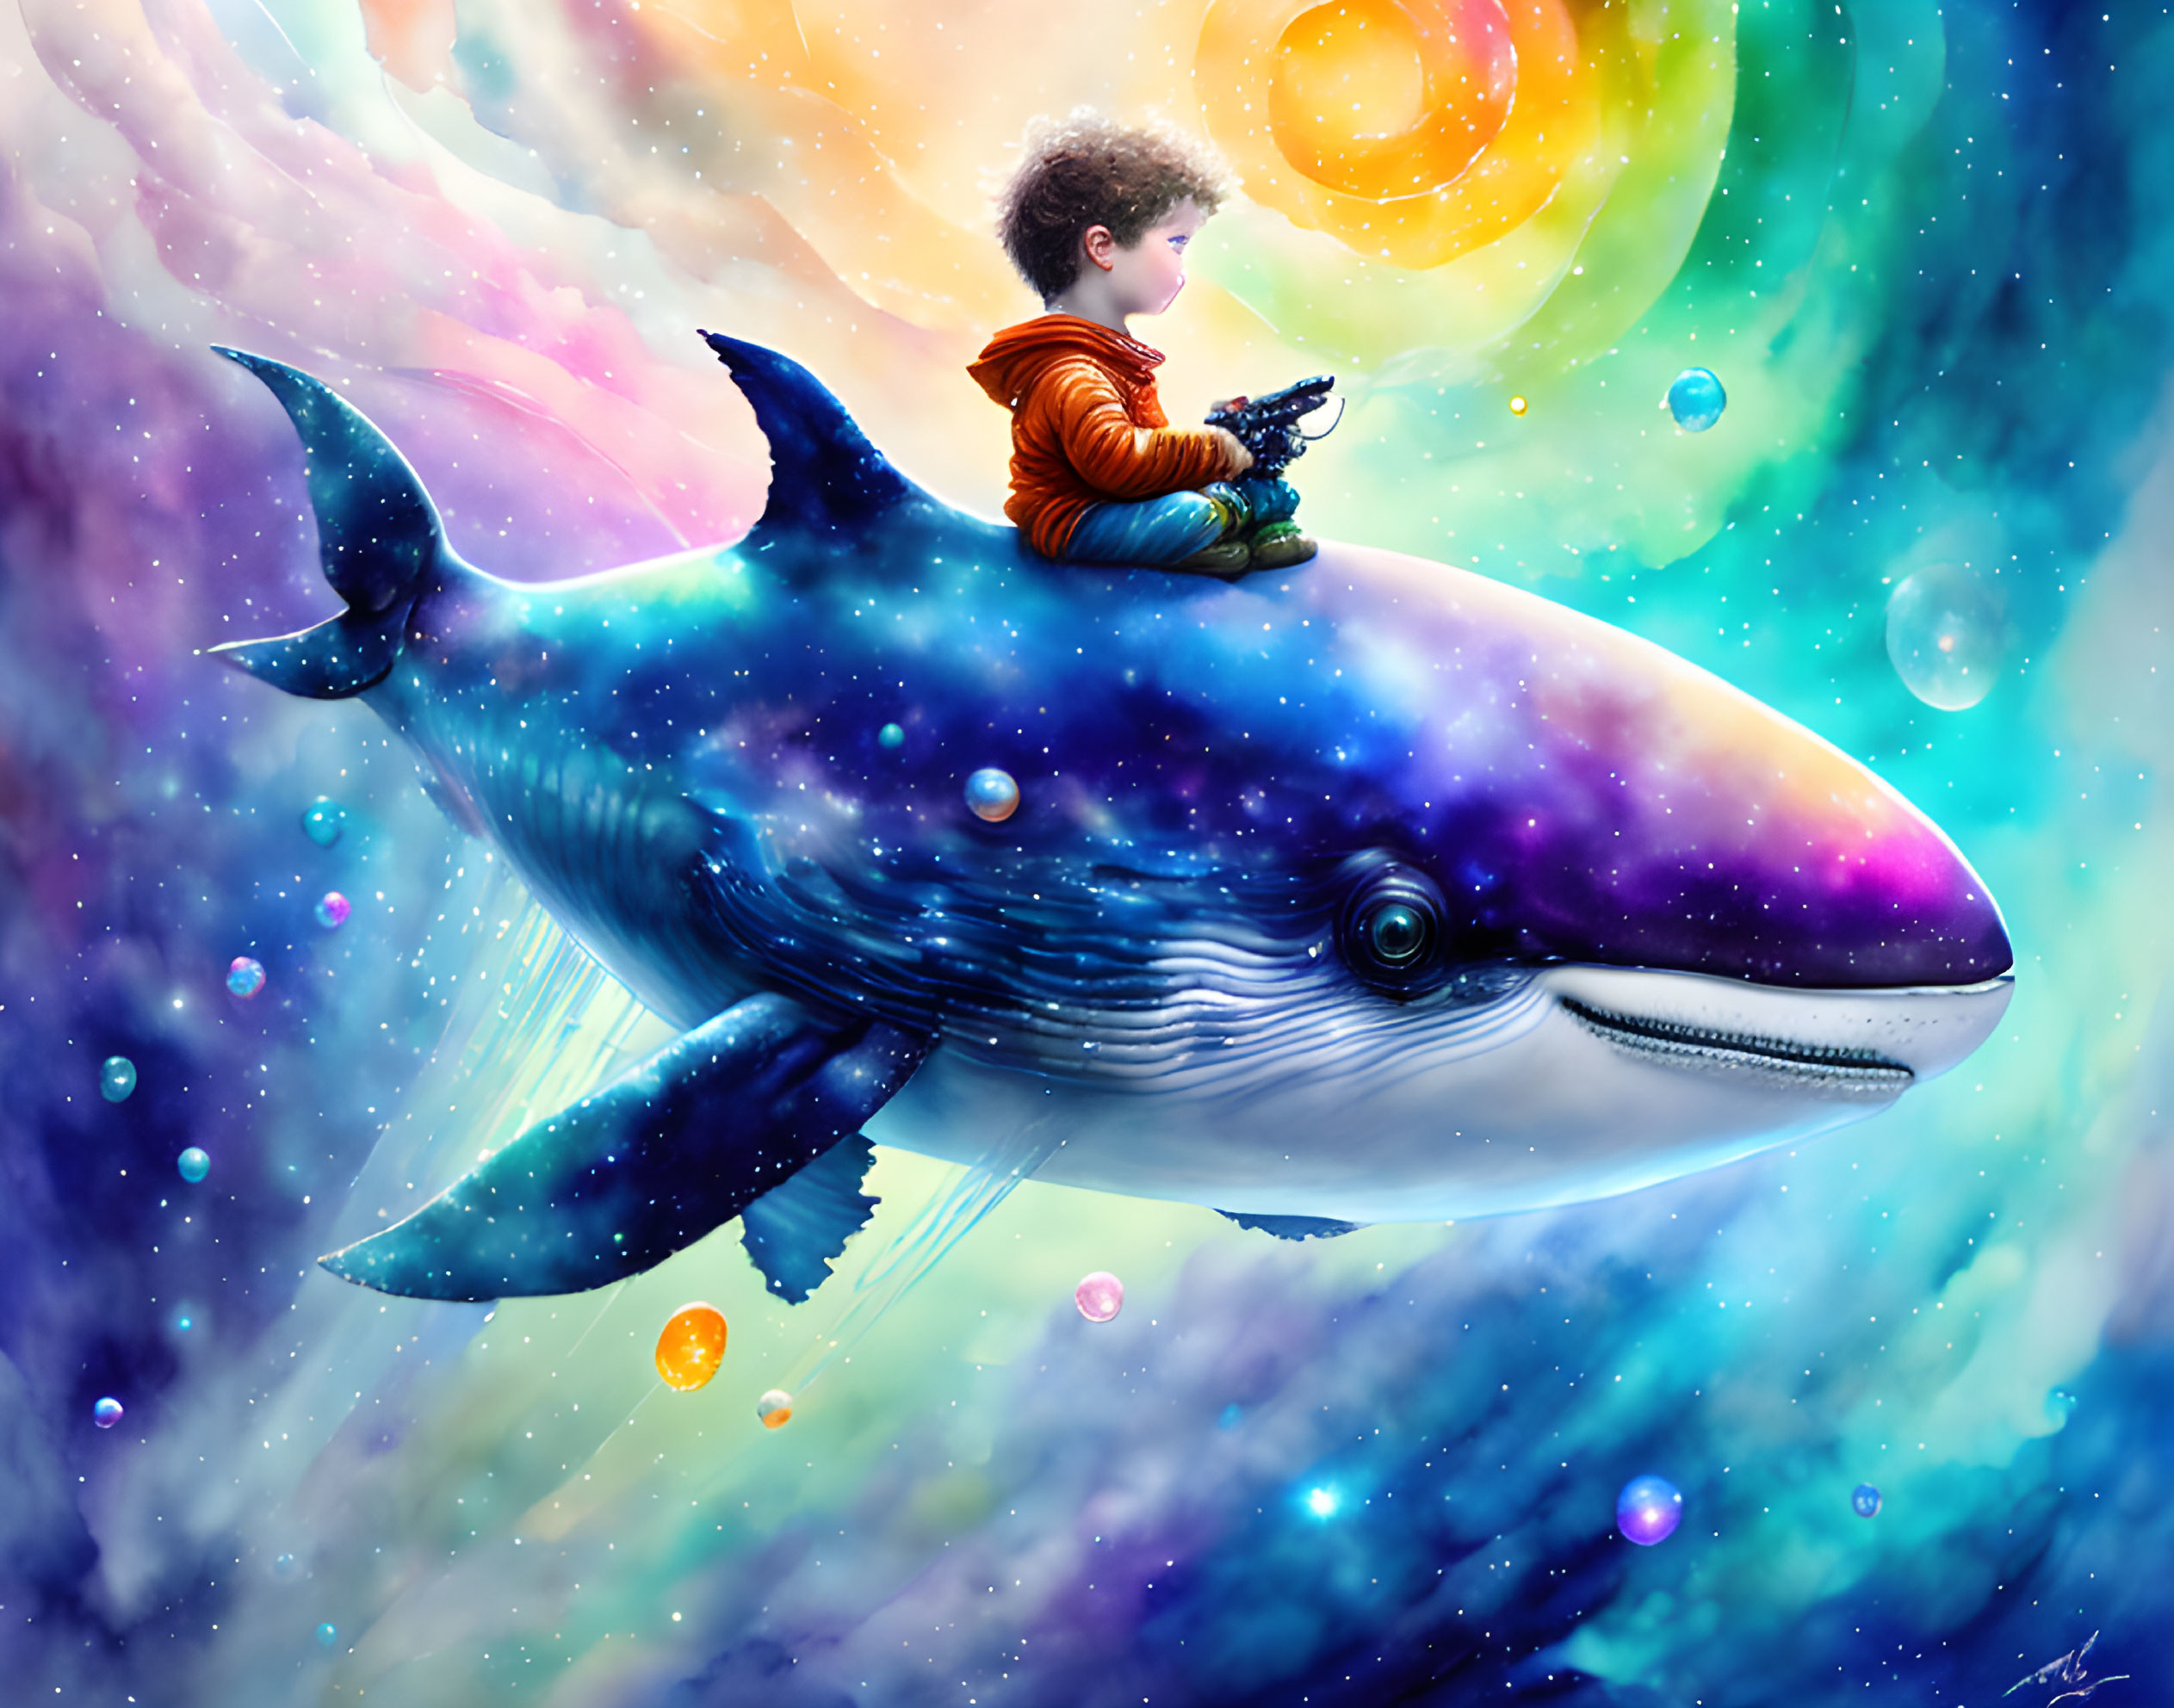 a whale of a dream